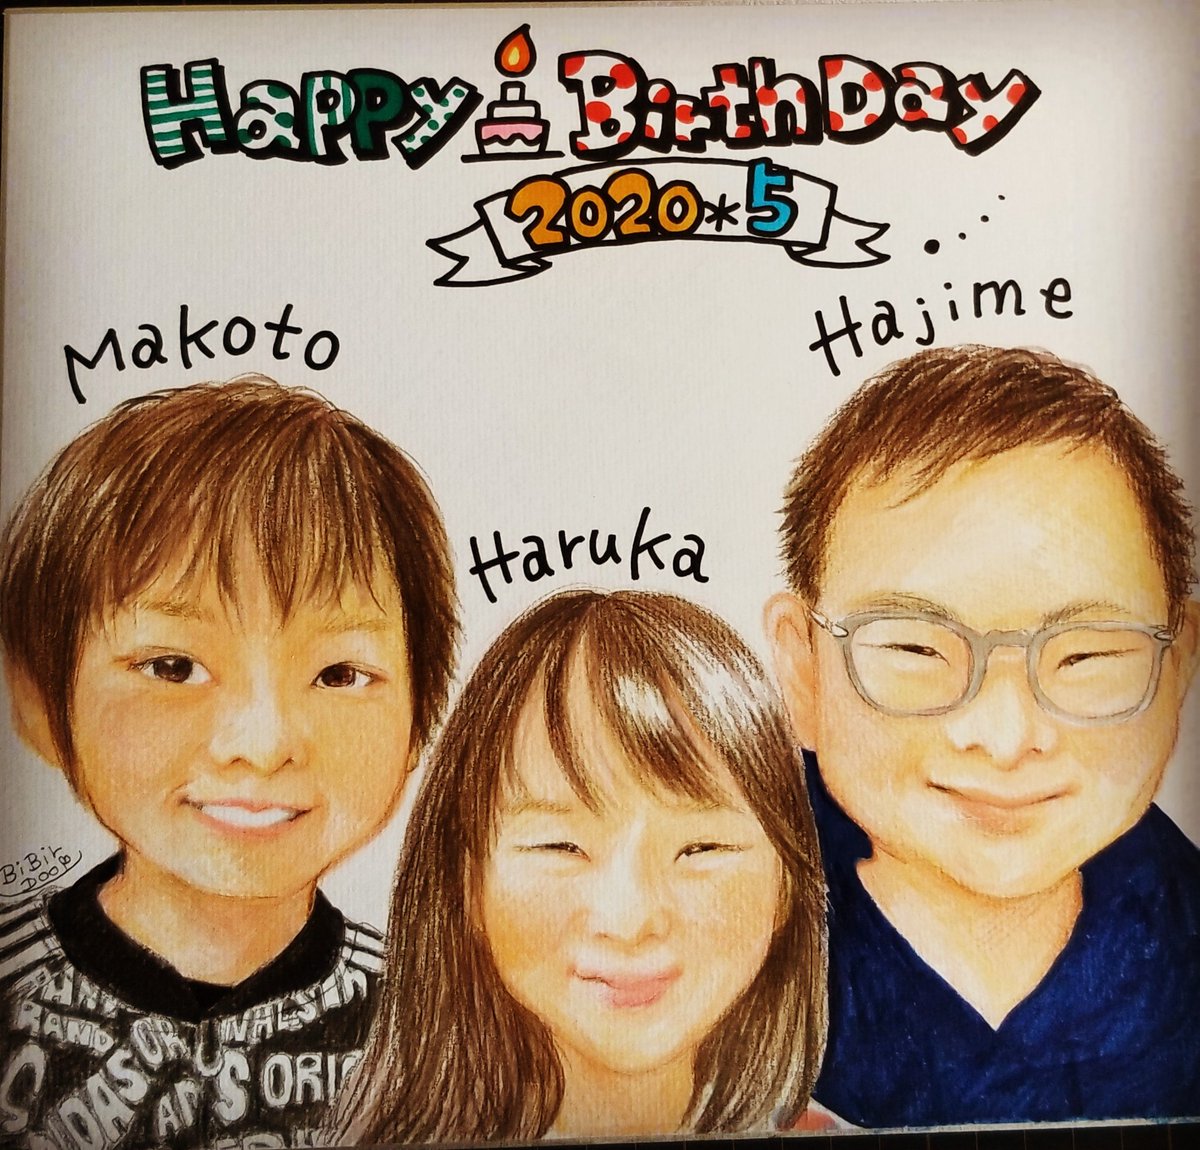 ビバドゥ お友達のバースデーに お友達の子供たちの似顔絵を プレゼントしてくれました ˊᵕˋ ੭ 3人ともいい笑顔 喜んでもらえたそうです ありがとうございます 兄妹 友達 誕生日 Birthday プレゼント Art Illustration 似顔絵